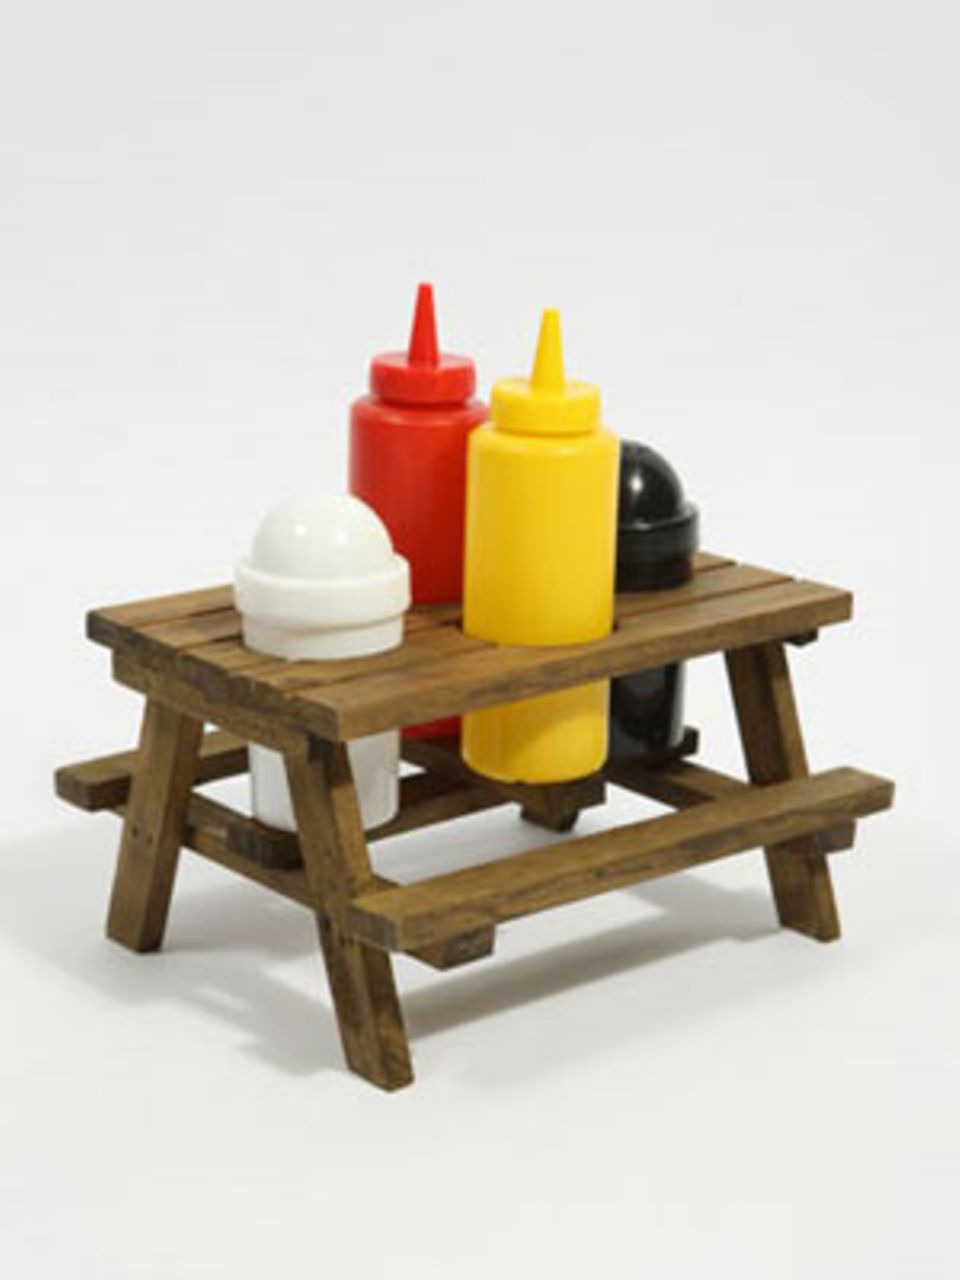 Alles am richtigen Platz: Kleiner Holztisch (10,5 cm hoch) mit Ketchup- und Senfflaschen sowie Salz- und Pfefferstreuer. Von Urban Outfitters, um 26 Euro, über www.urbanoutfitters.co.uk